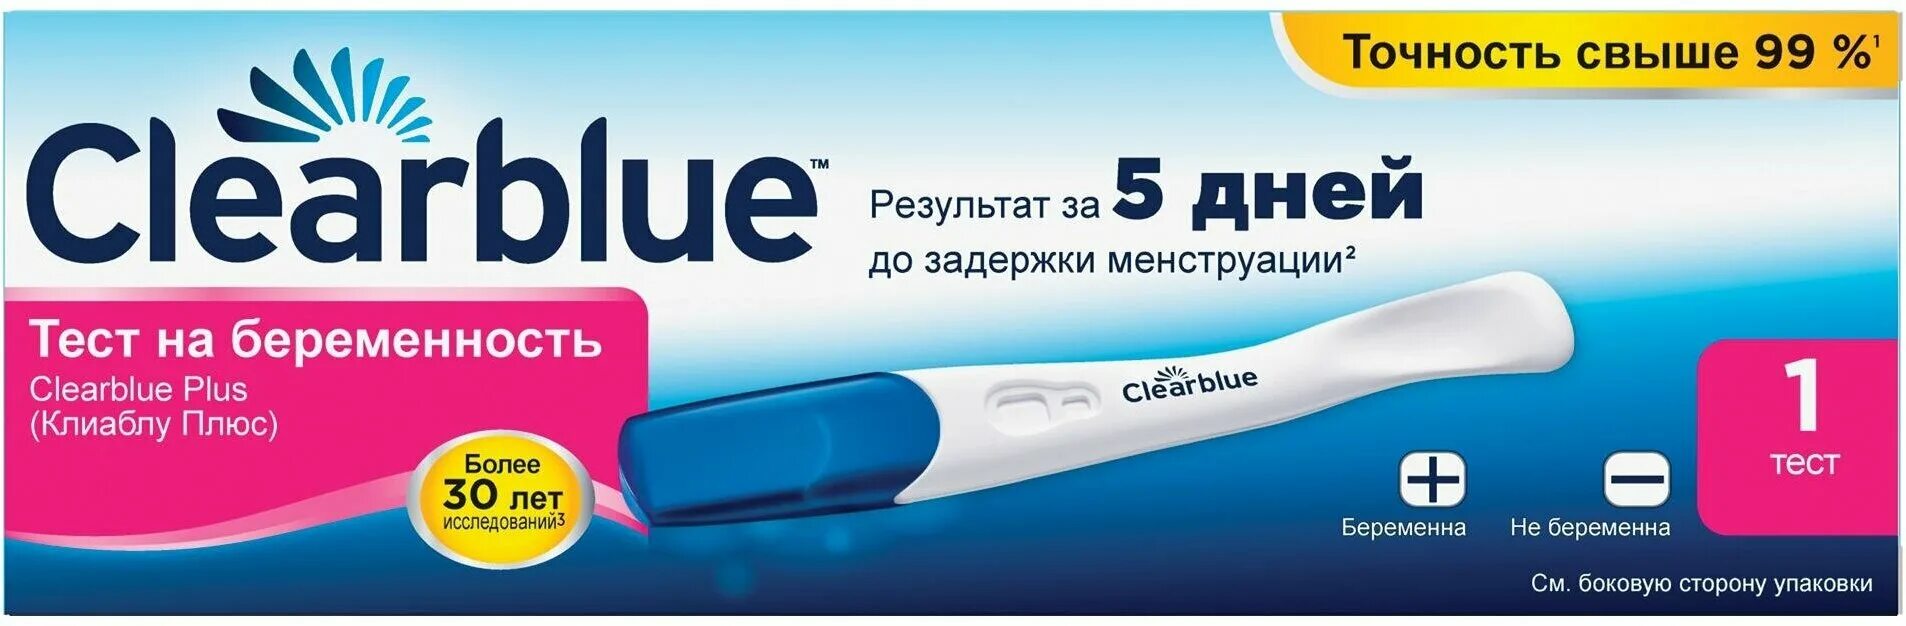 Тест на беременность Clearblue. Клиаблу тест на беременность. Тест Clearblue Plus на беременность. Результаты теста на беременность Clearblue.